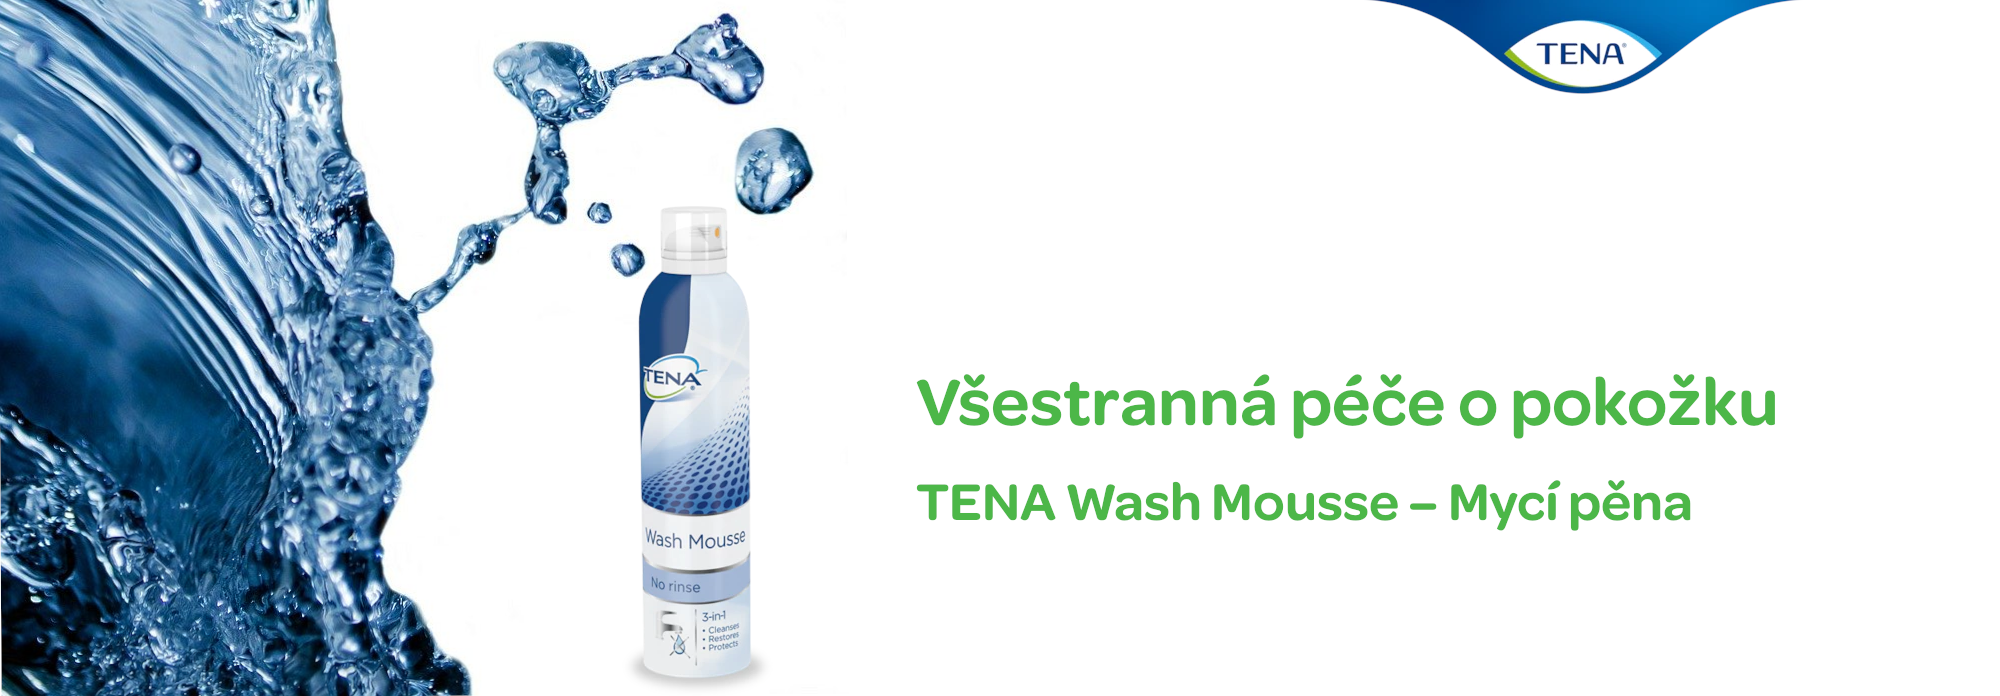 TENA Wash Mousse - Mycí pěna